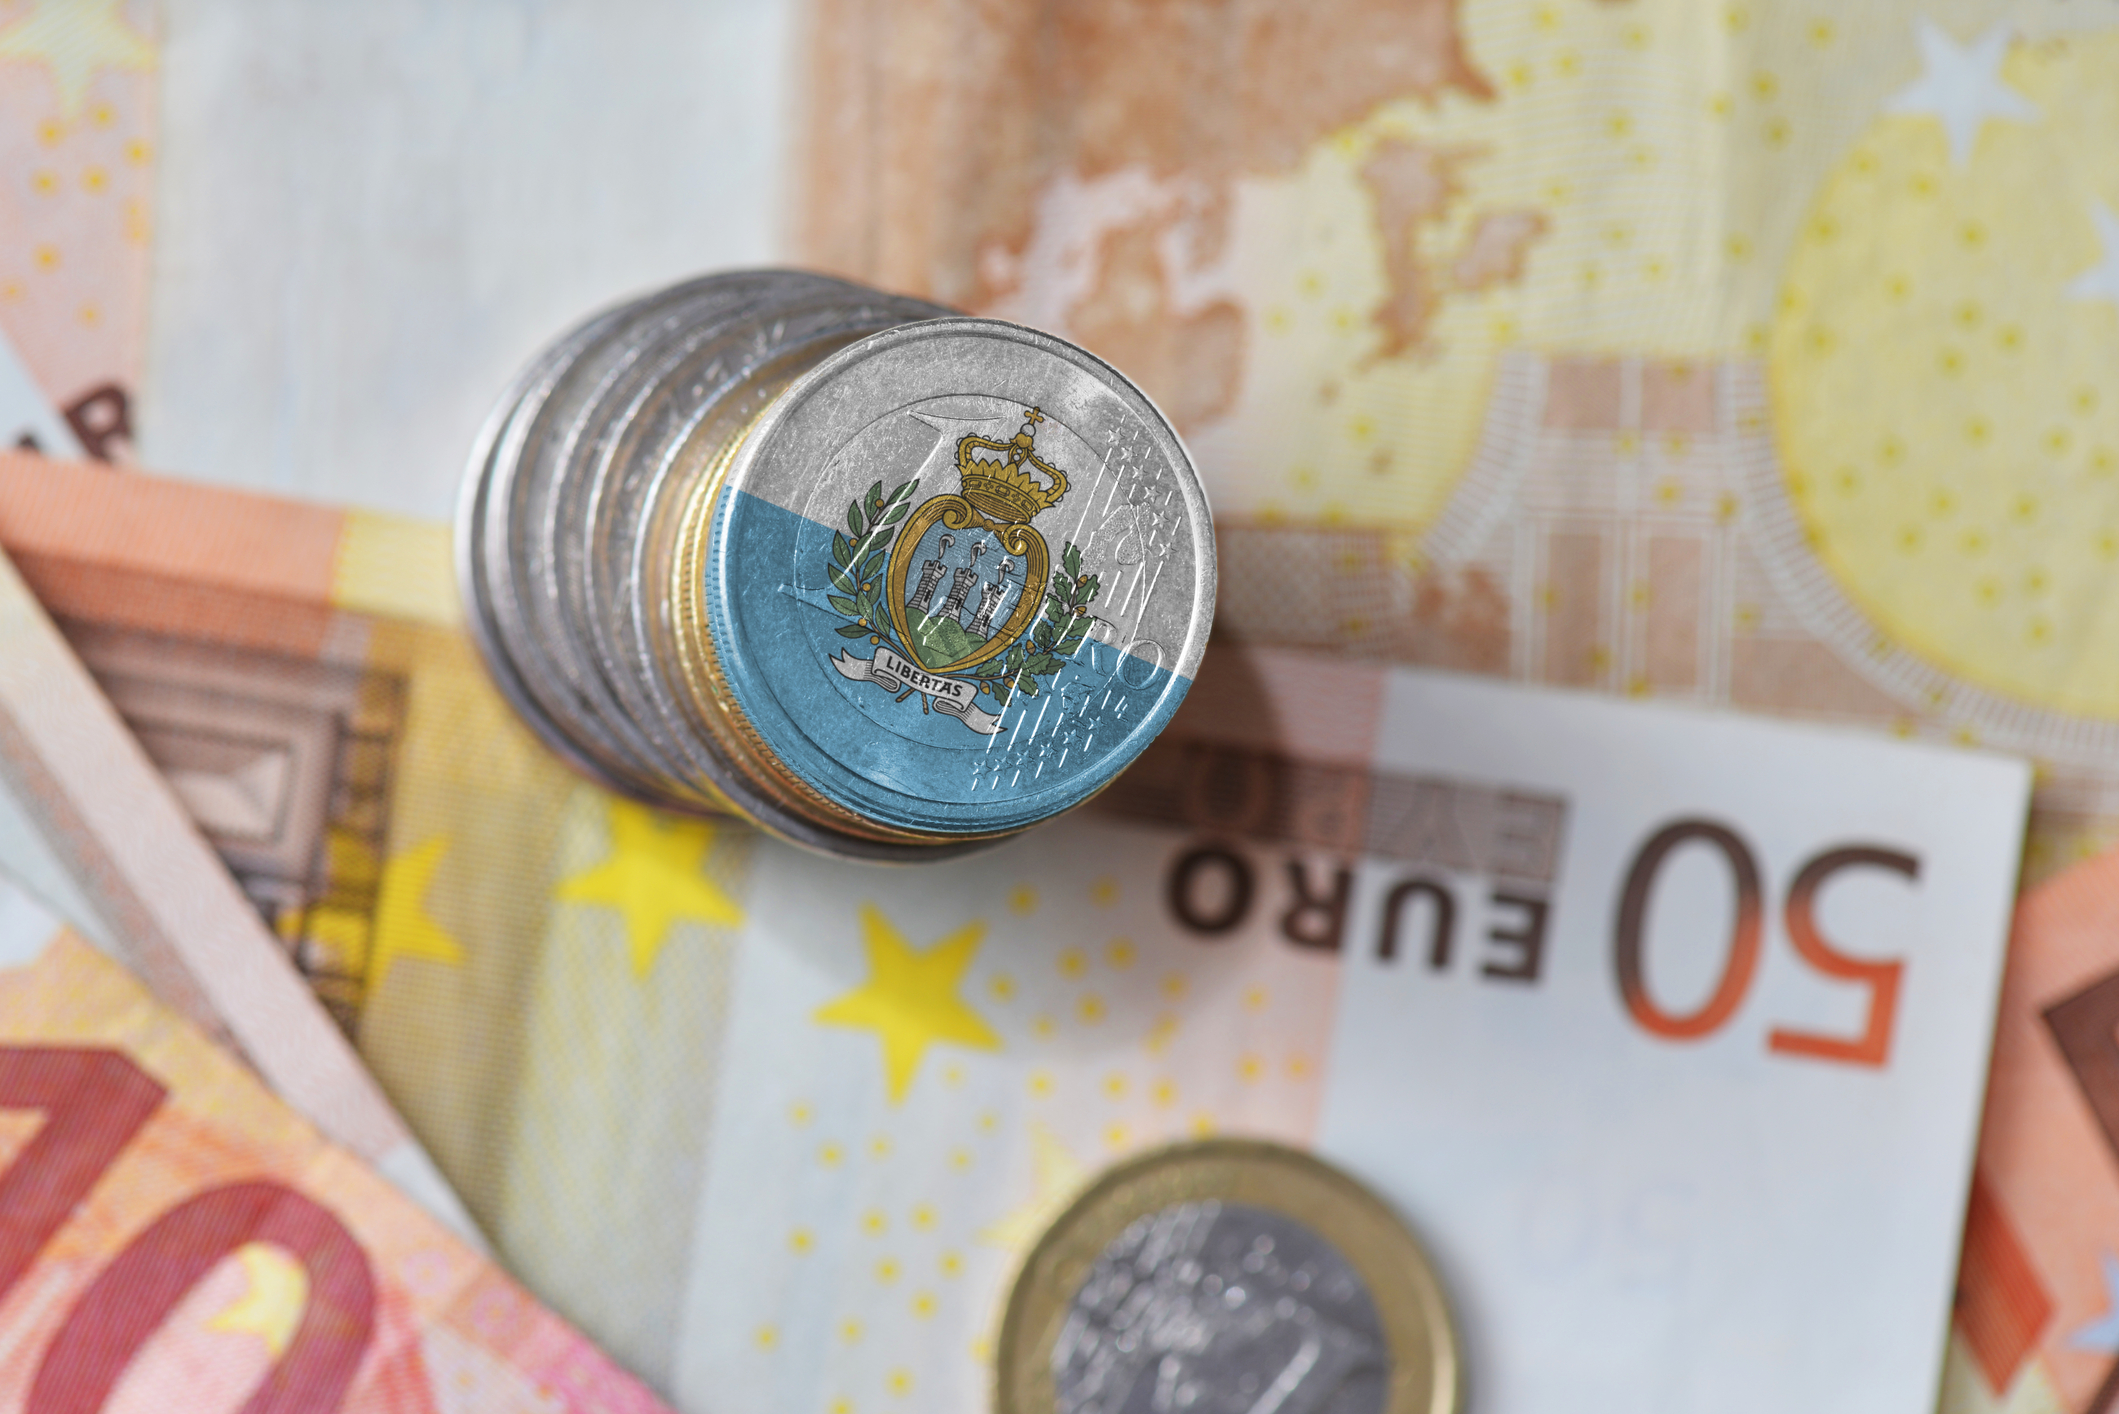 Celor din San Marino le este permis să își înscripționeze monedele și bancnotele cu propriile simboluri, chiar dacă fac parte din sistemul euro (sursă foto: dreamstime) 